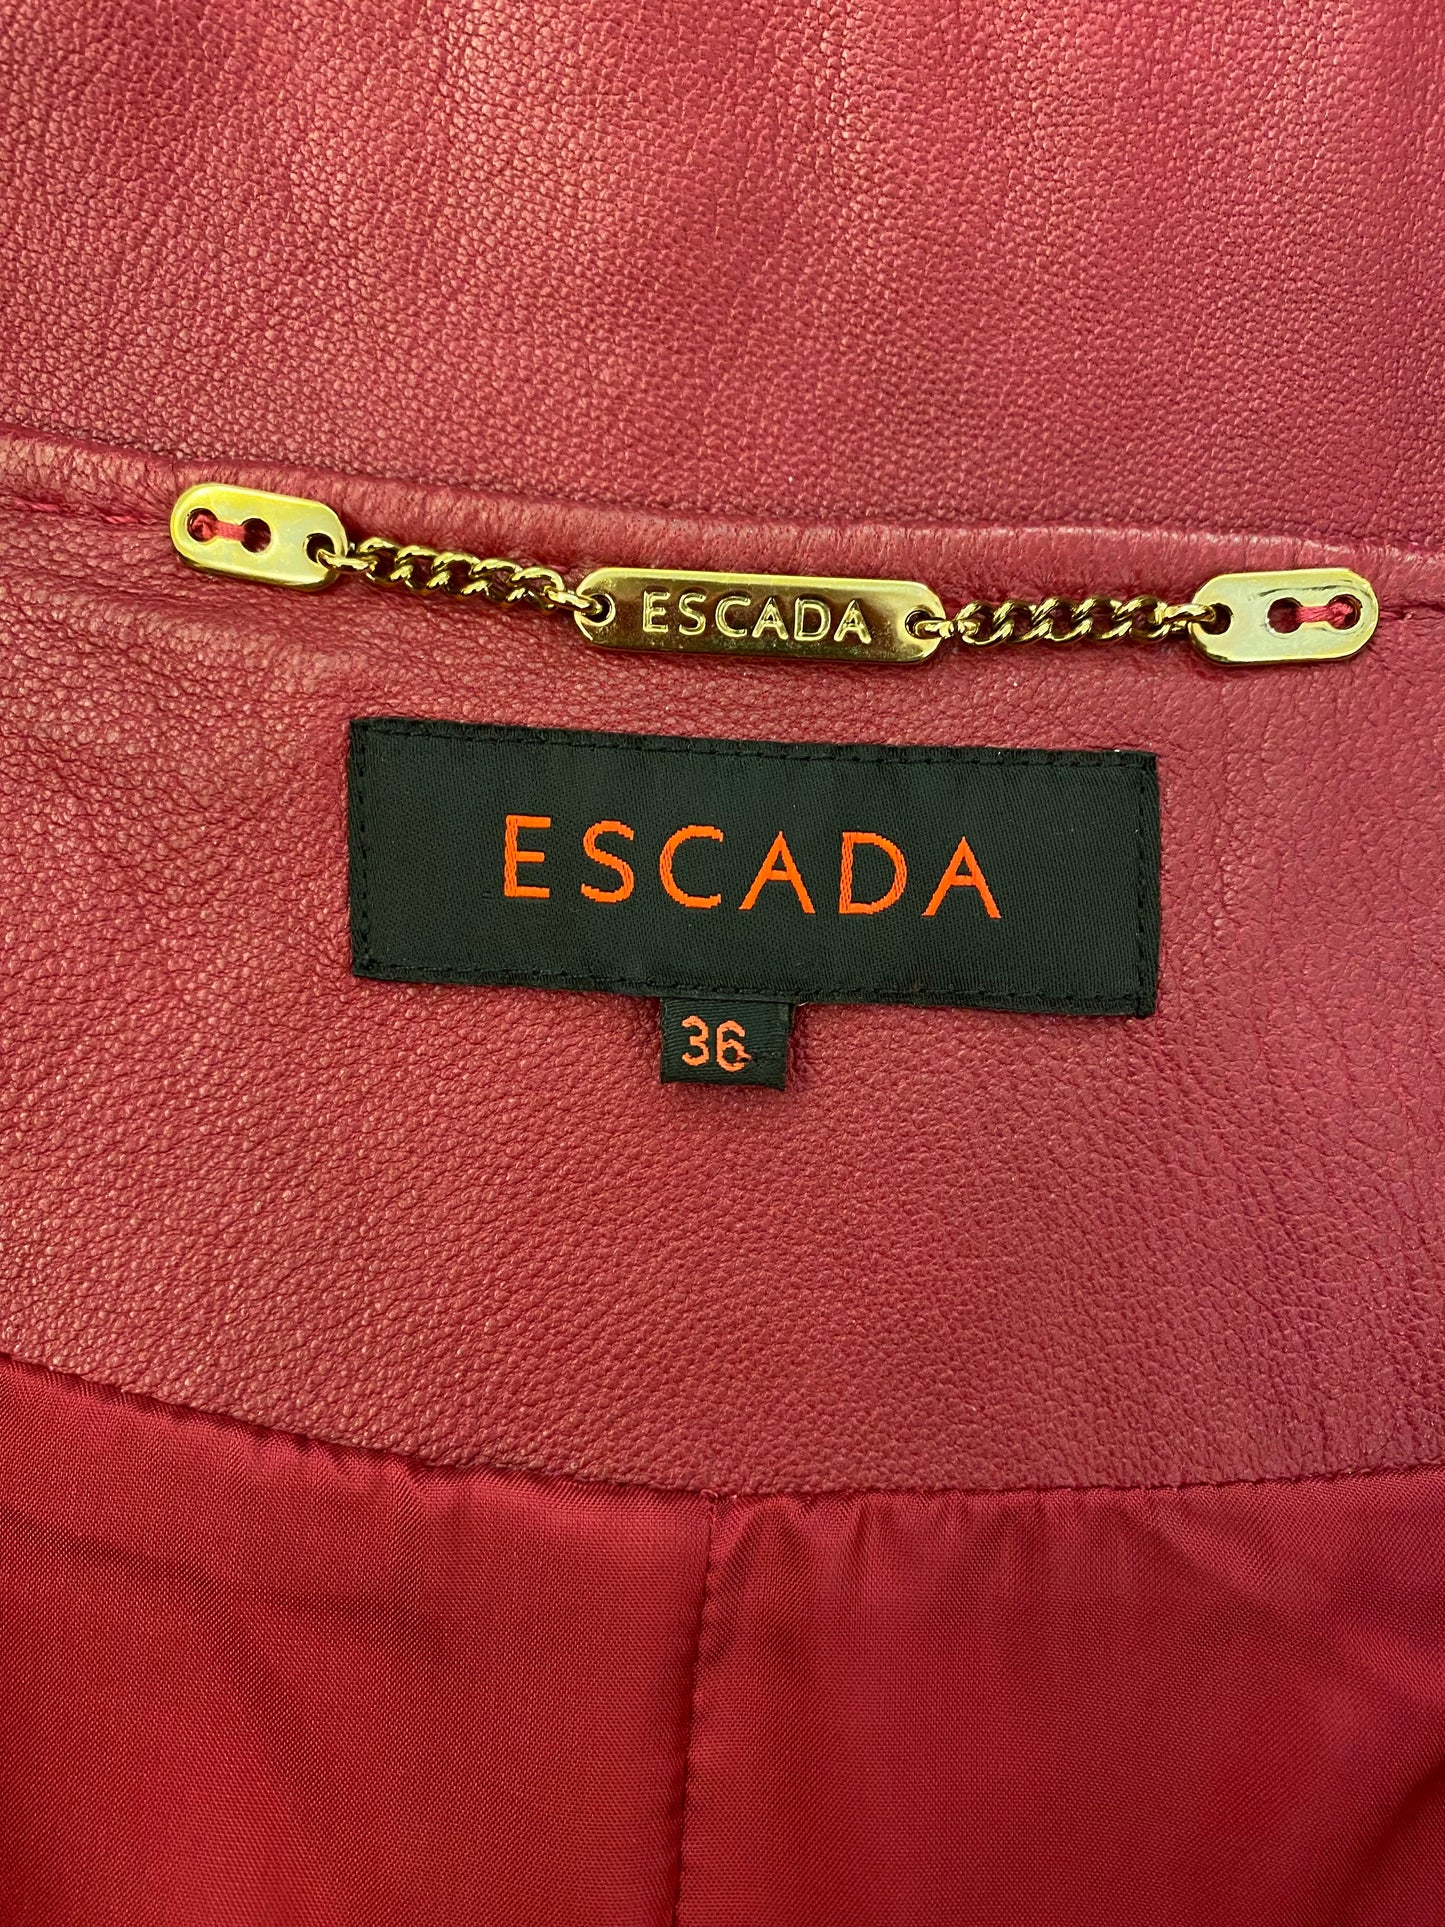 ESCADA Leather Jacket Size 36